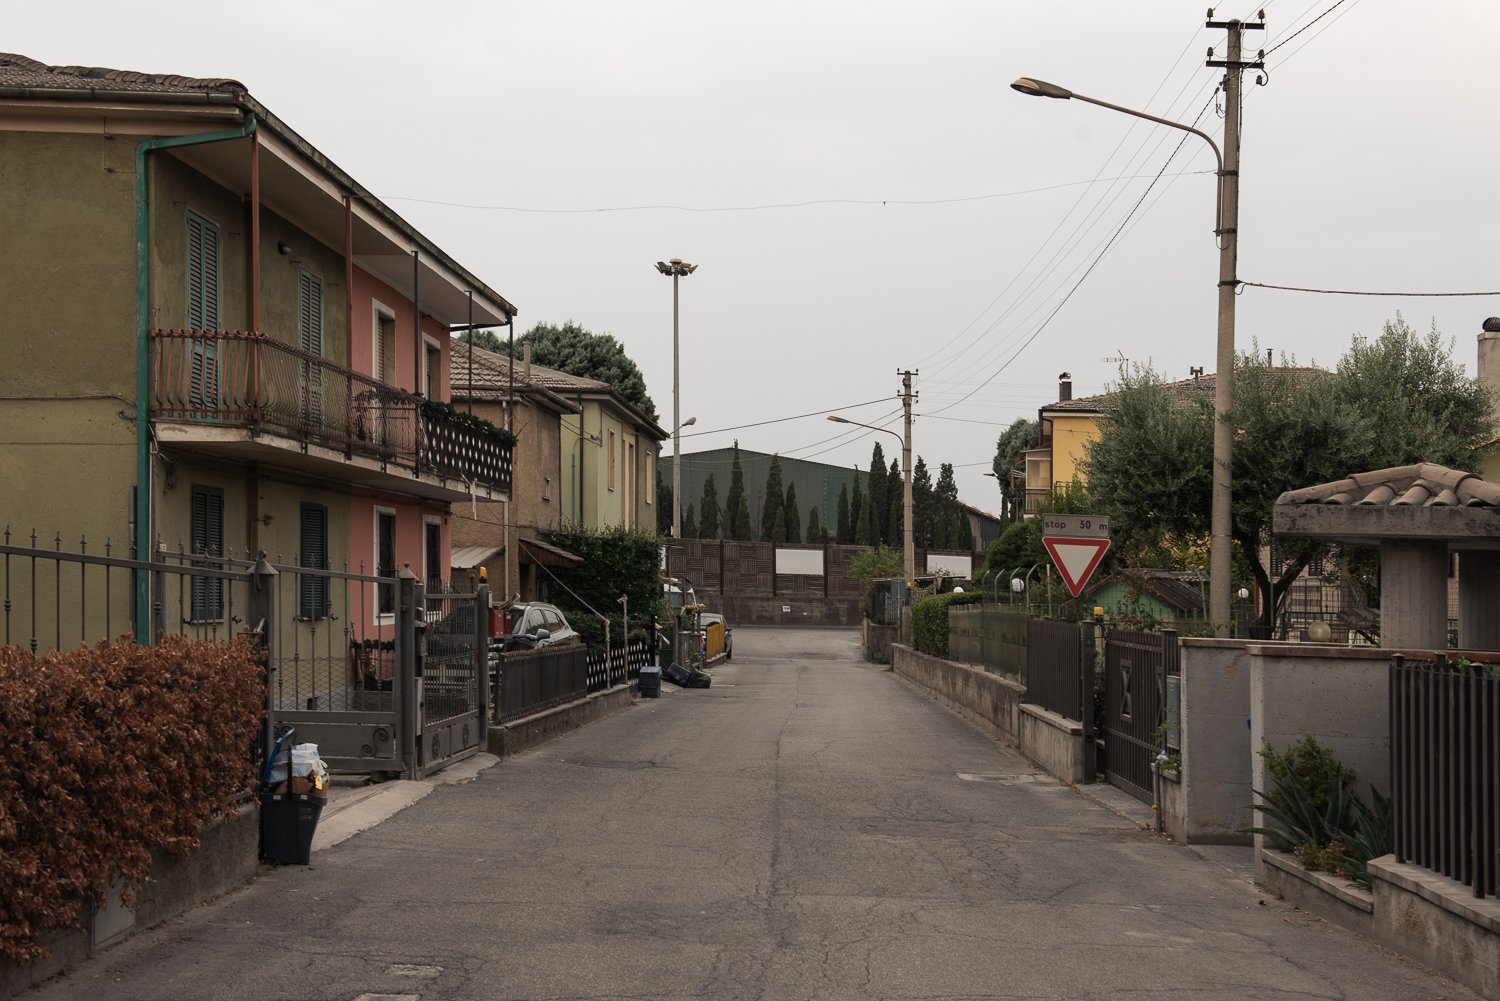  Gli impianti dell’acciaieria visti da via dell’Industria nel quartiere Prisciano.Terni (Terni), 2023. 